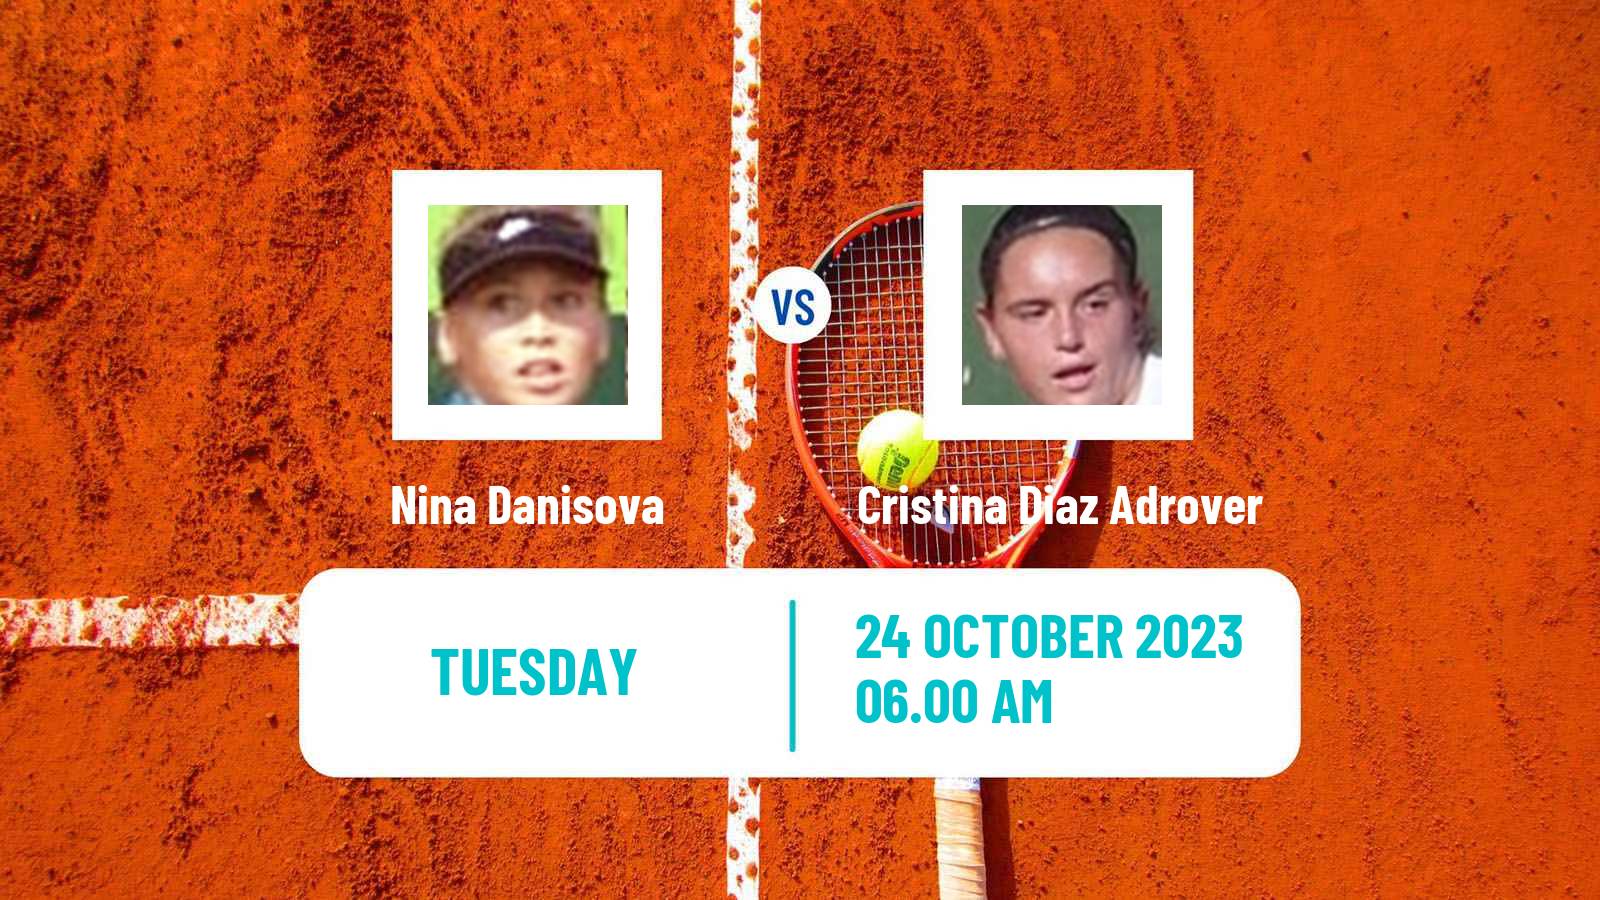 Tennis ITF W15 Villena Women Nina Danisova - Cristina Diaz Adrover